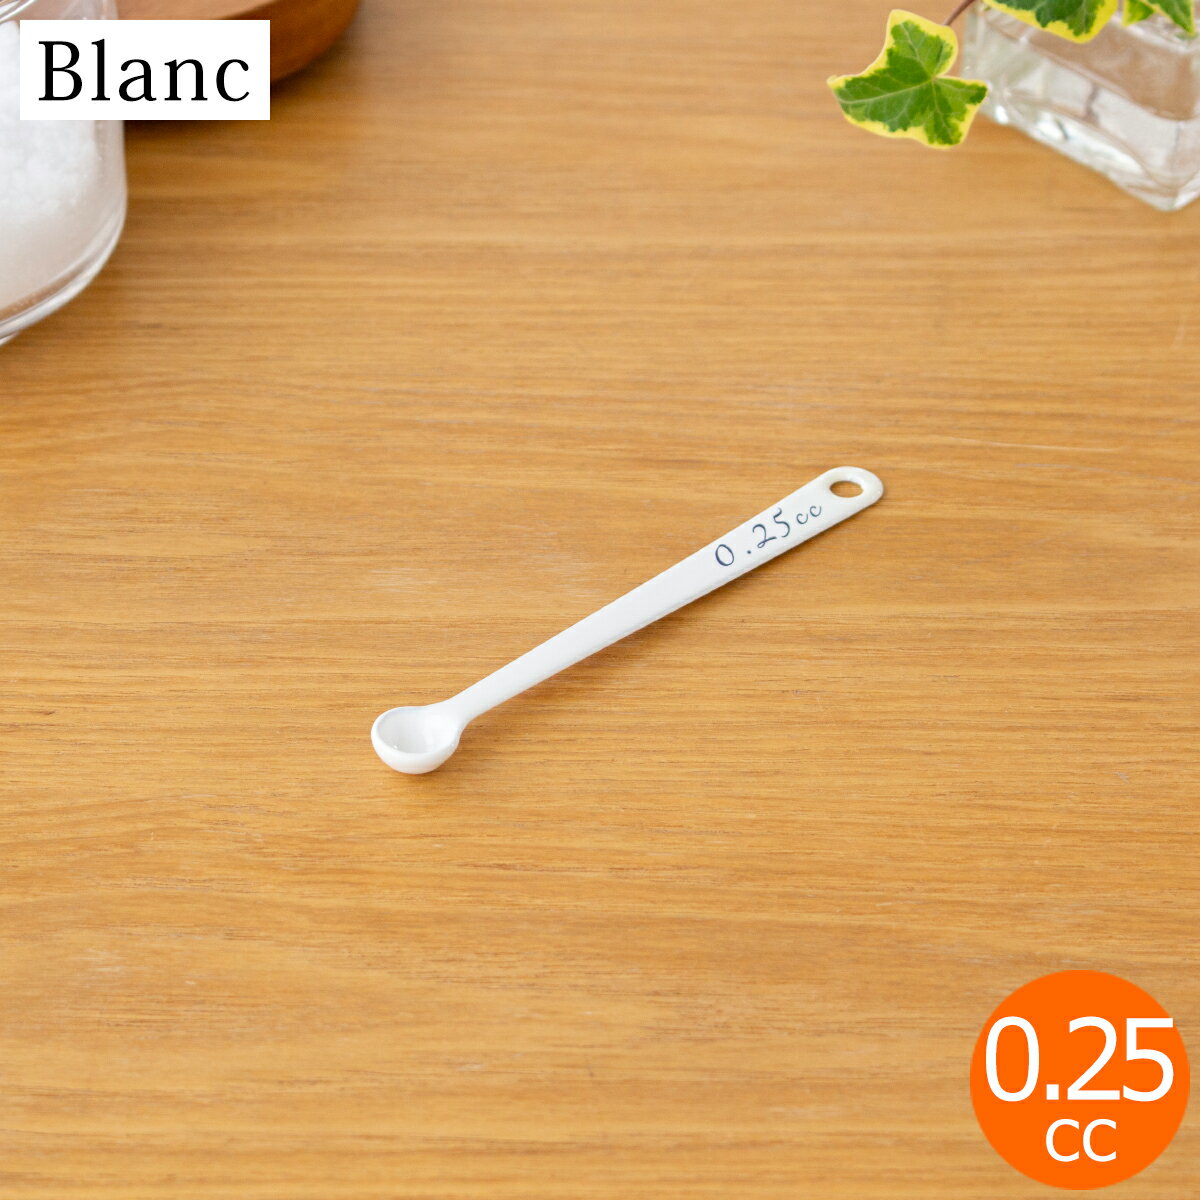  計量スプーン 0.1cc 琺瑯 ホーロー Blanc ブラン 高桑金属 白 ホワイト スプーン キッチンツール 日本製